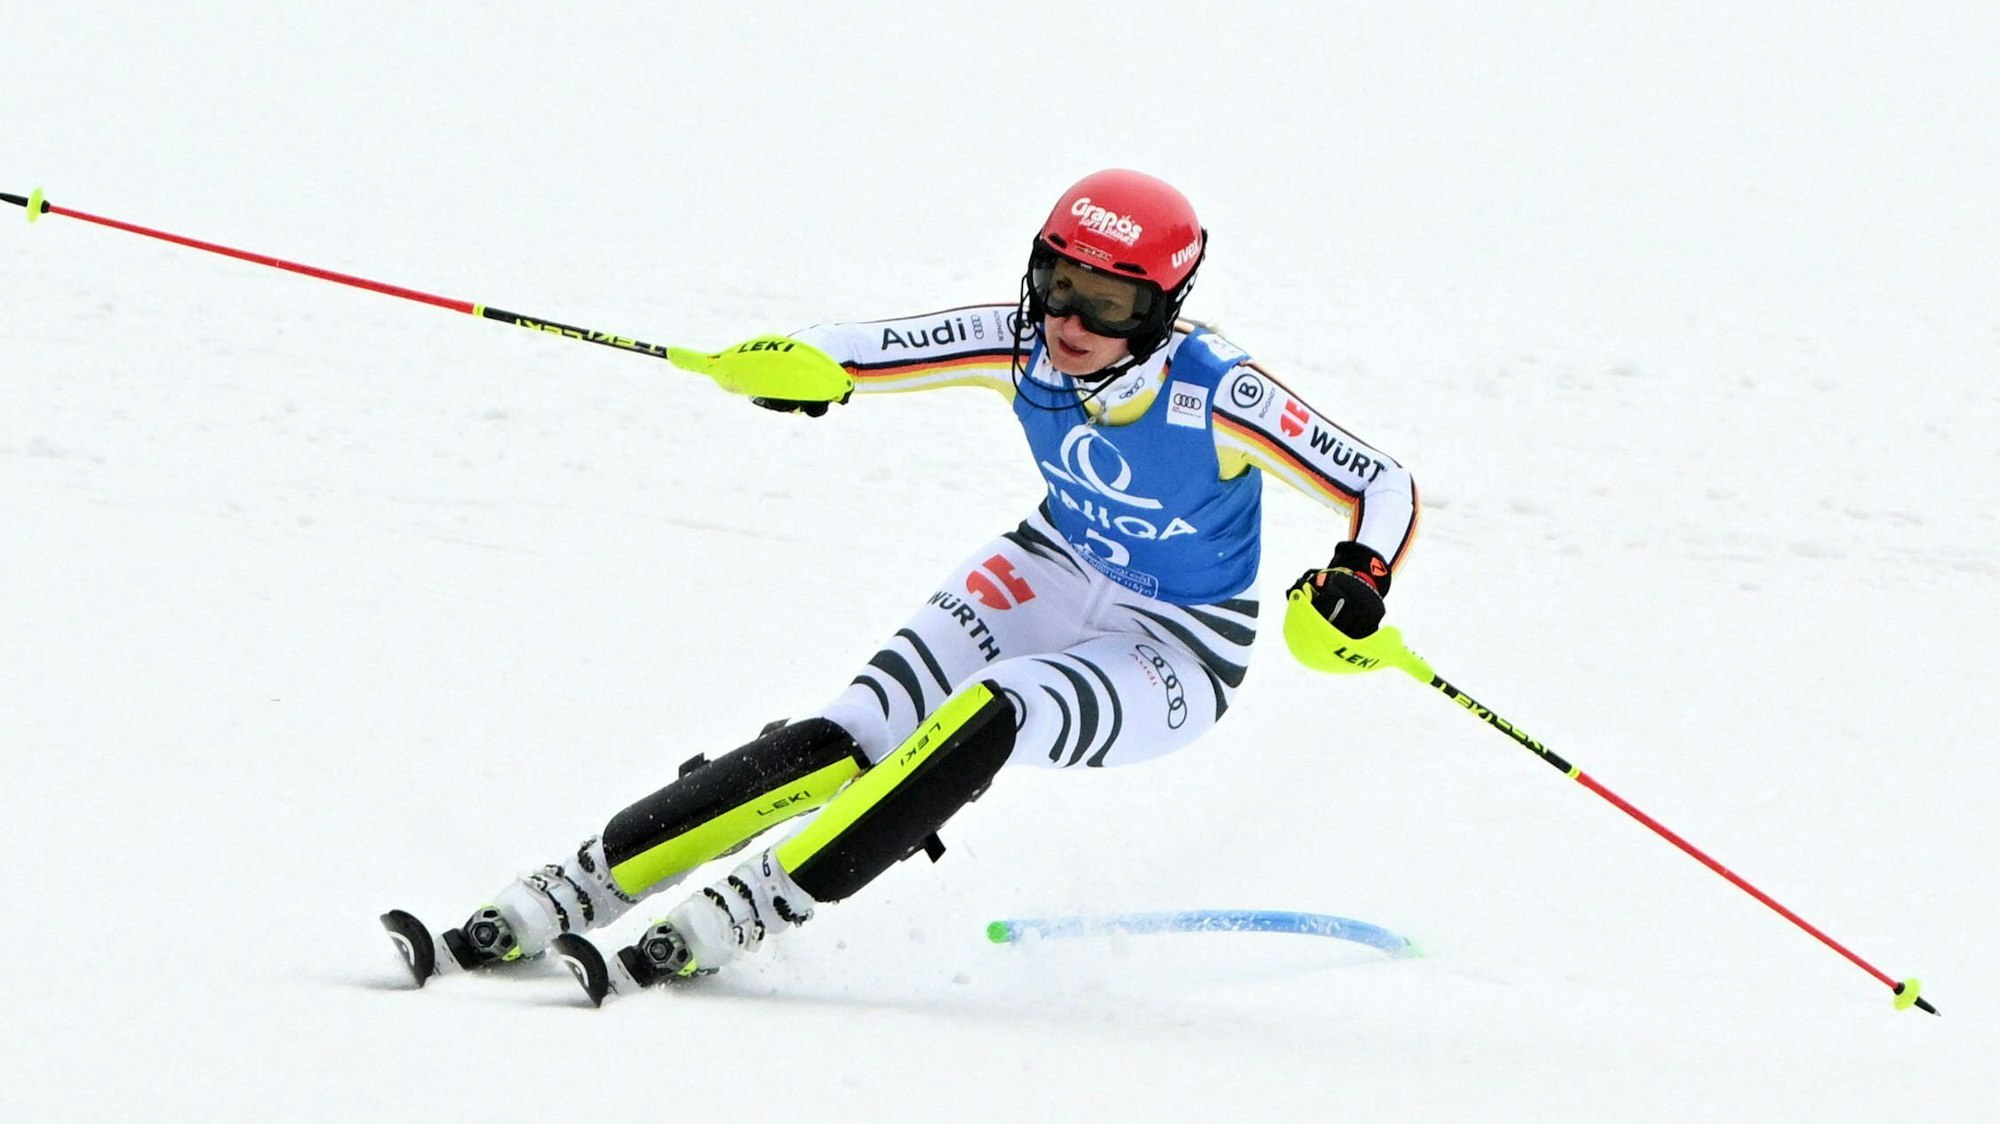 Ski-Alpin-Star Lena Dürr beim Weltcup-Slalom in Spindlermühle/Tschechien in Aktion.